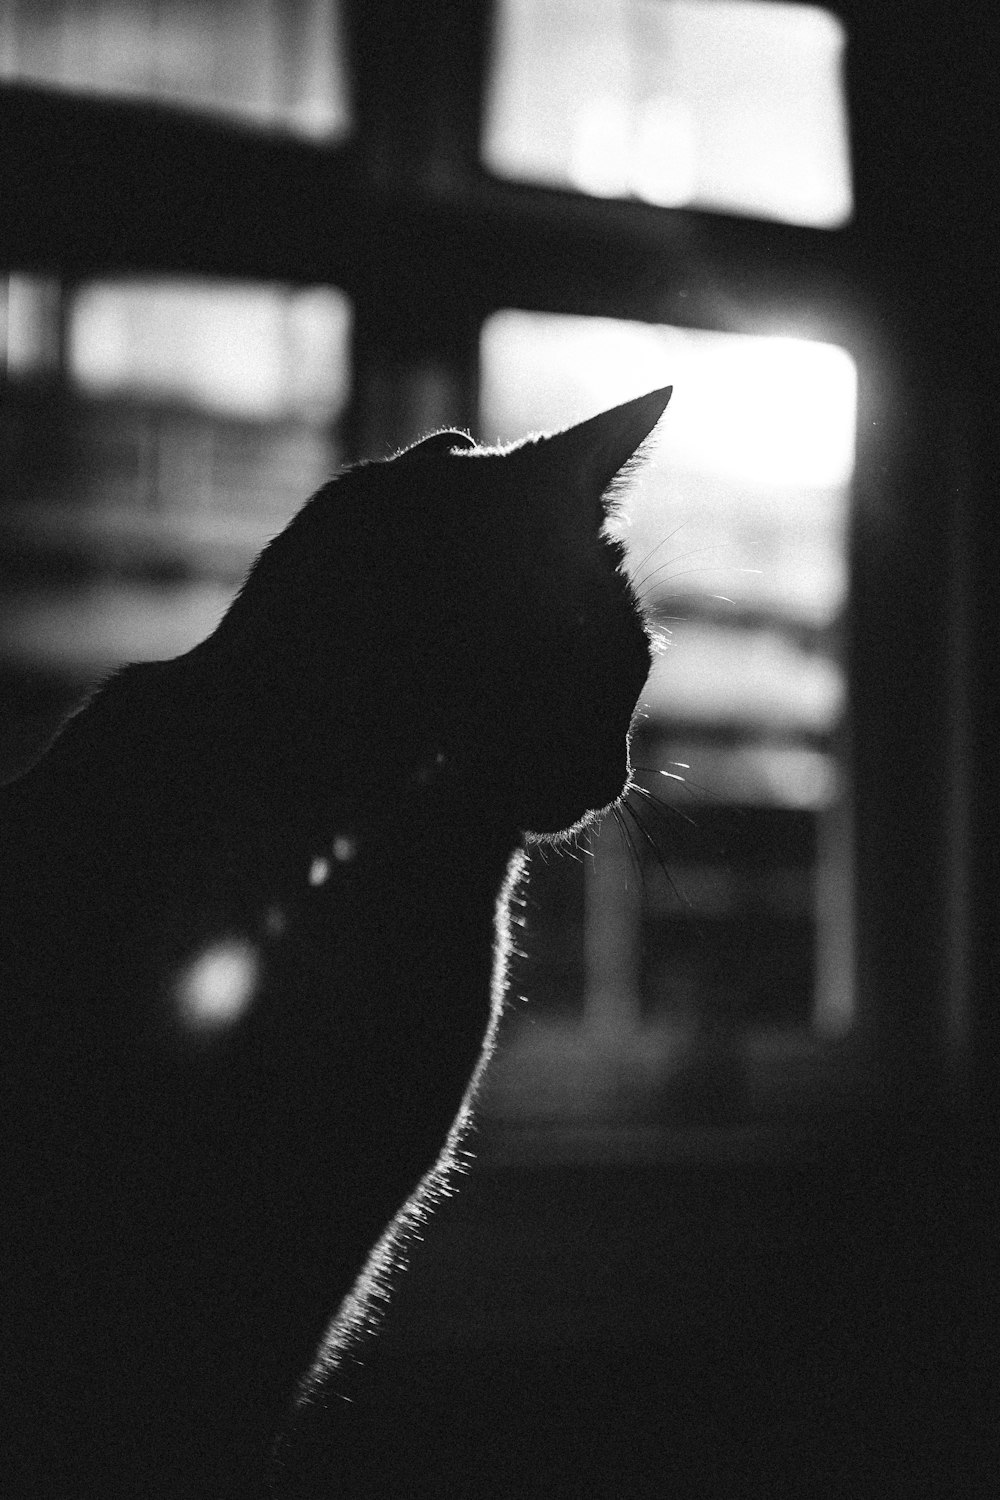 silhouette of cat near window